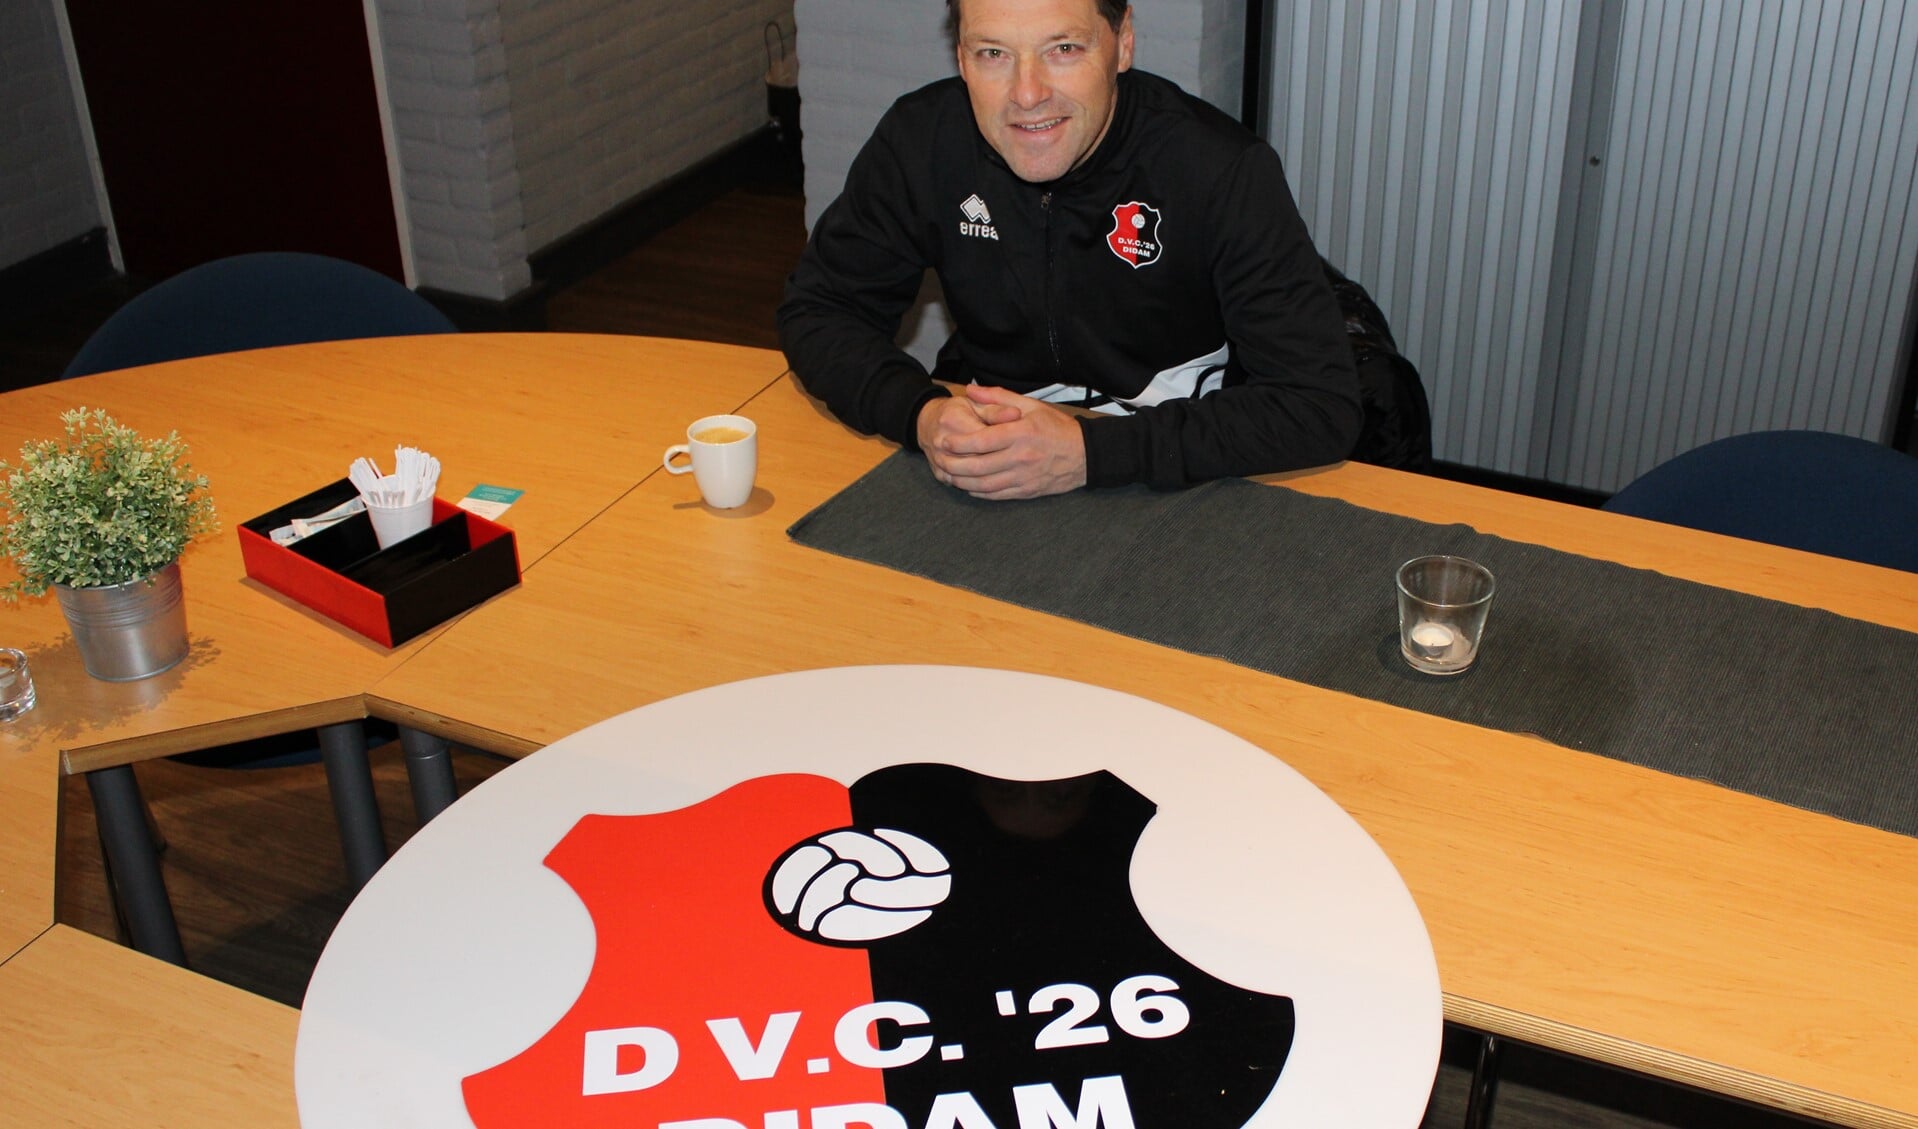 DVC'26 trainer Jan Oosterhuis wil met zijn DVC omhoogkijken. Foto: John van der Kamp